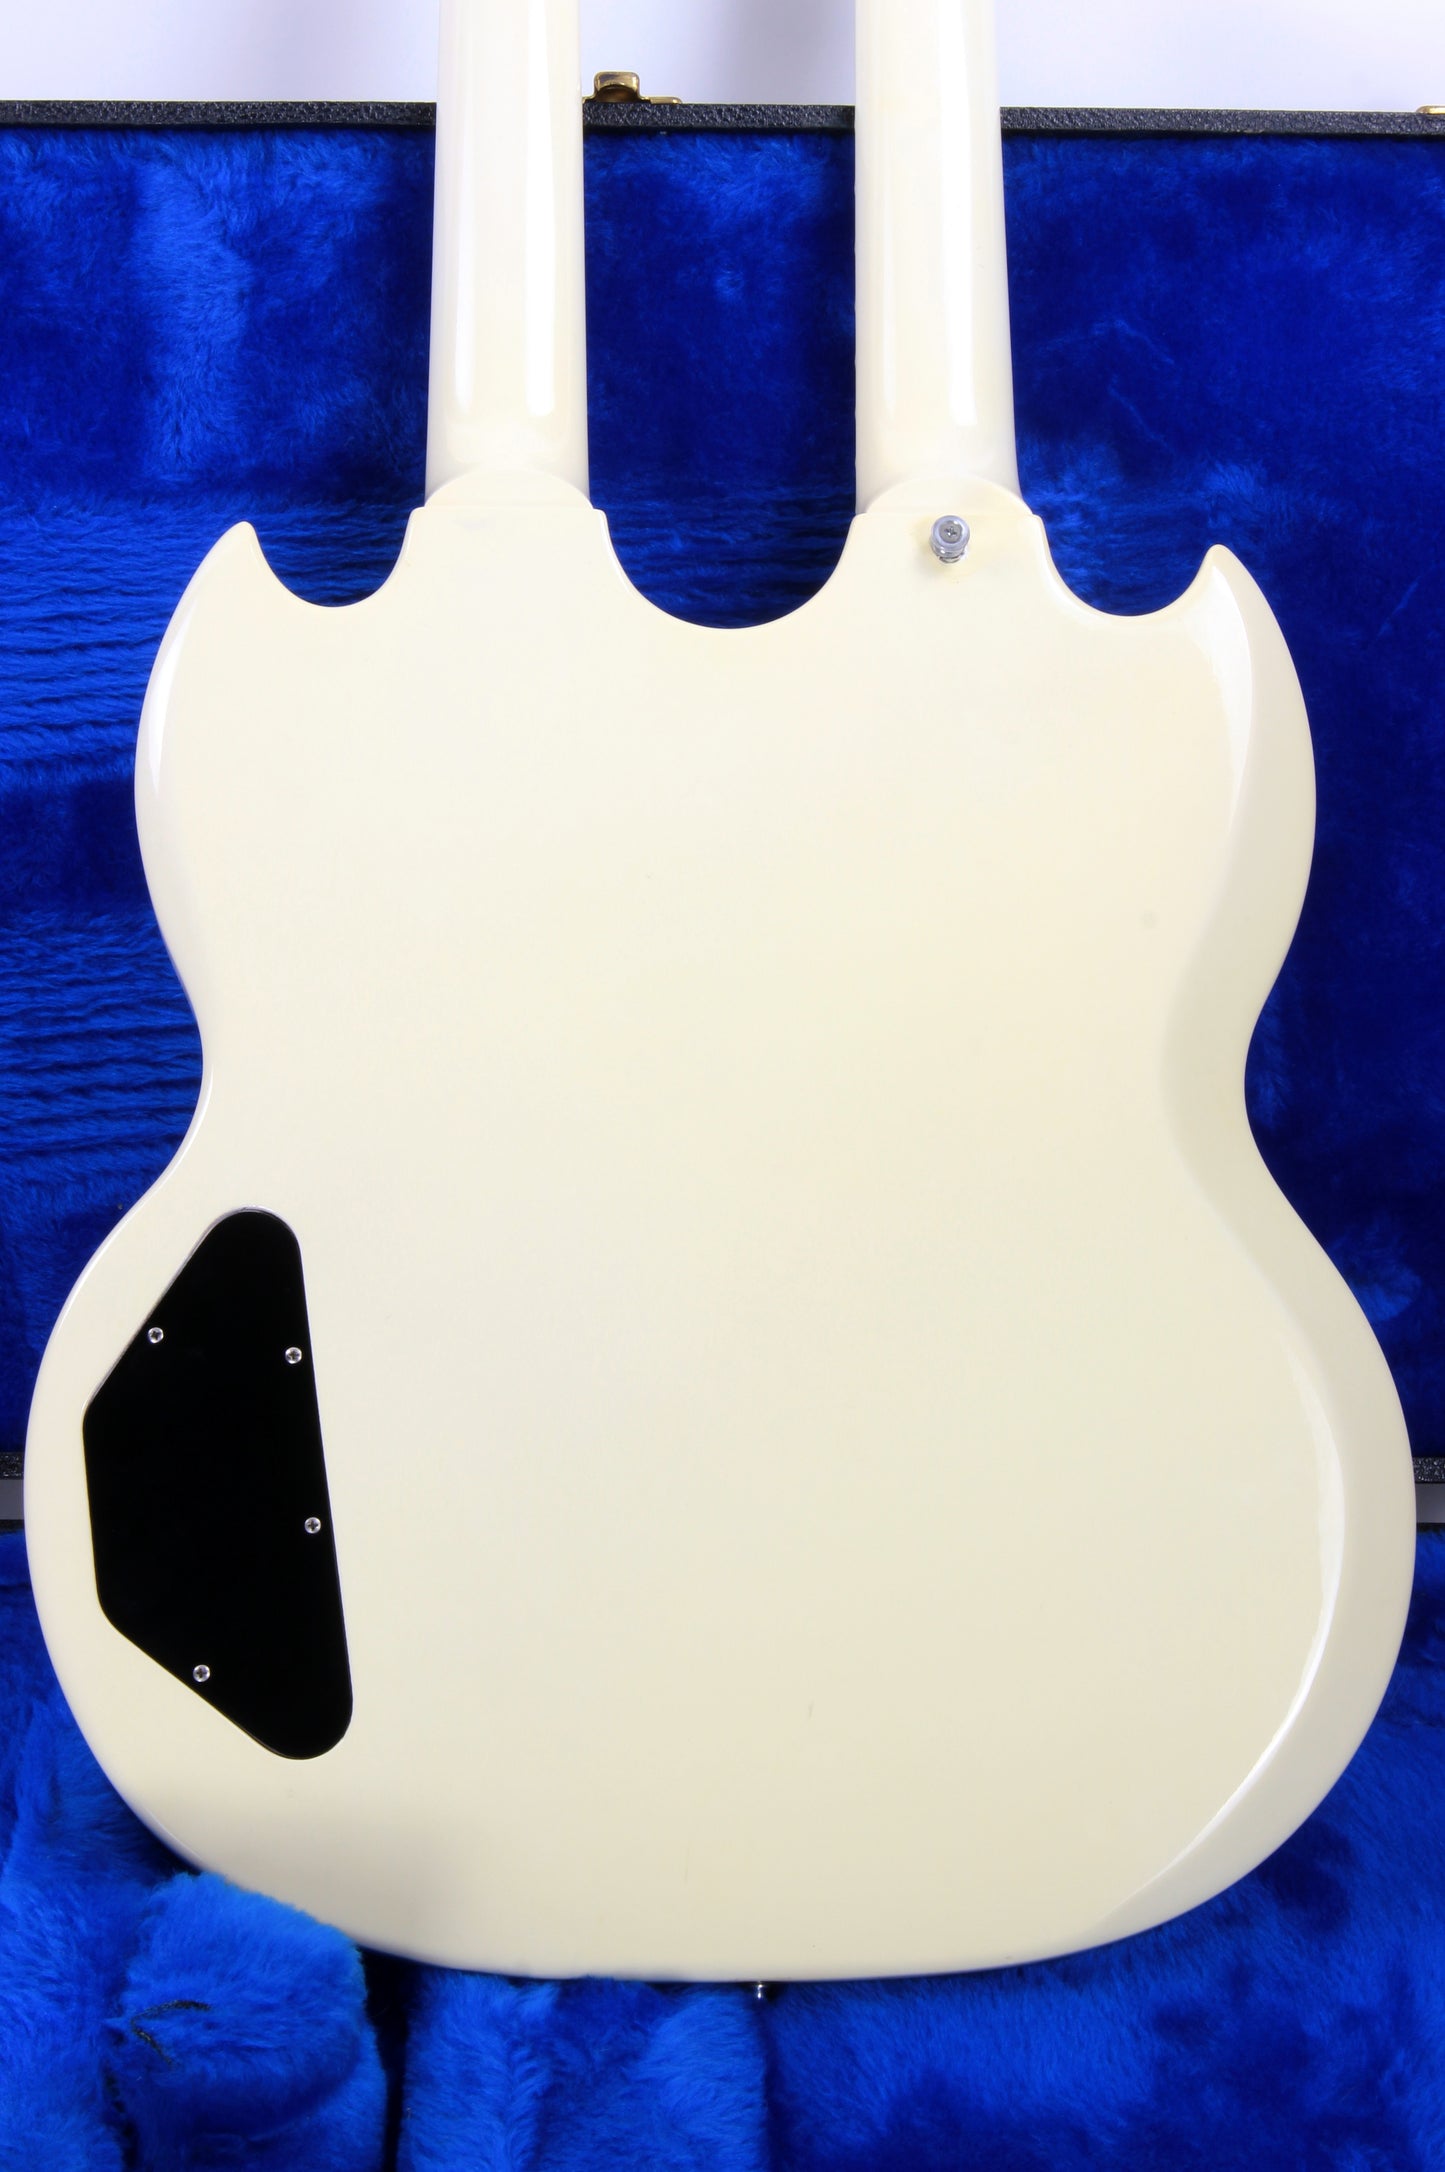 1987 Gibson EDS-1275 Doubleneck SG Alpine White 6/12 - Don Felder Alex Lifeson Vibes